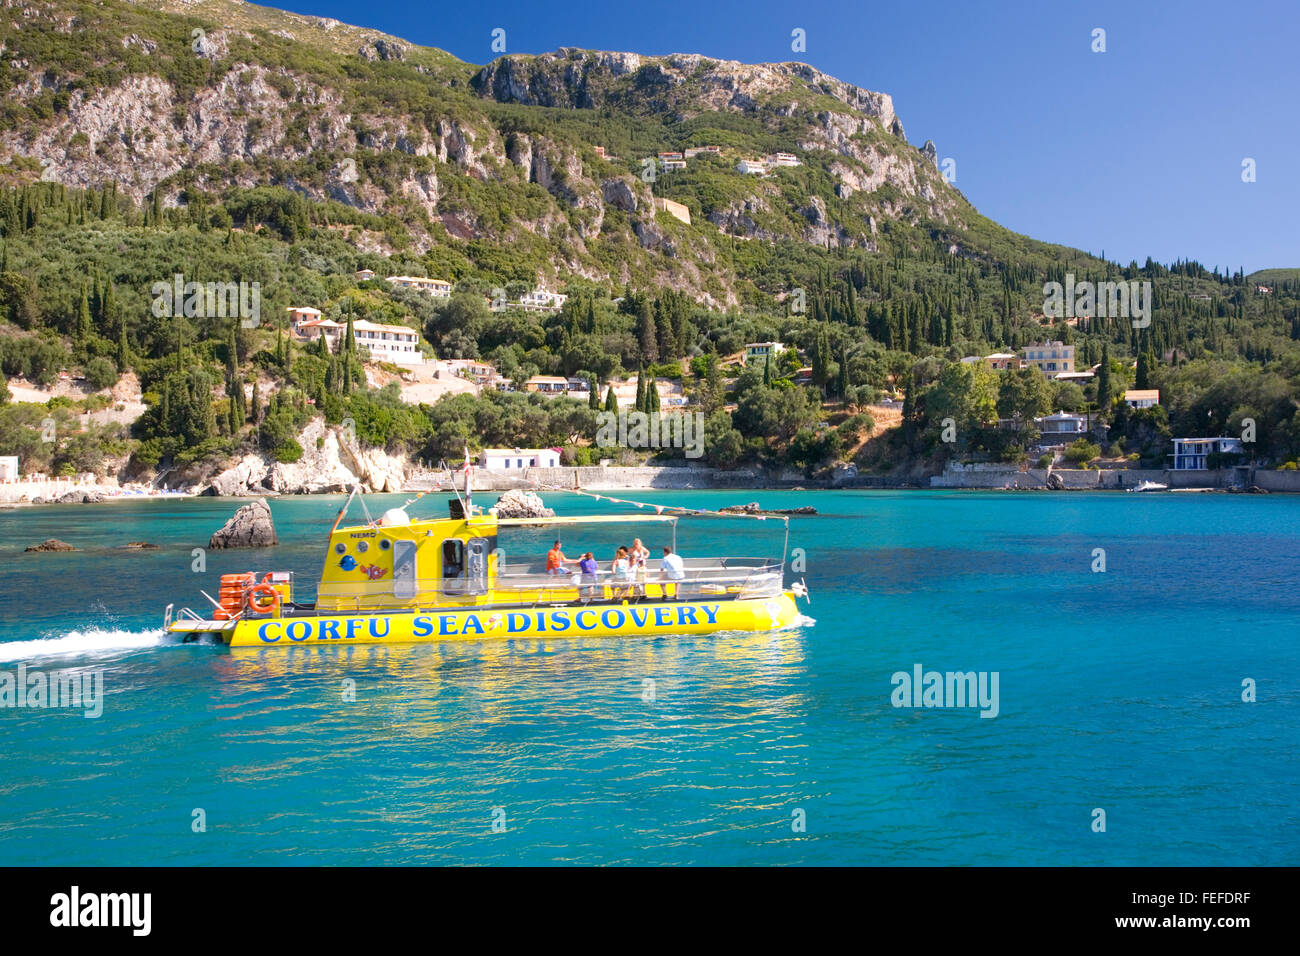 Paleokastritsa, Corfu, Isole Ionie, Grecia. Esperienza subacquea craft attraversando le acque turchesi del porto. Foto Stock